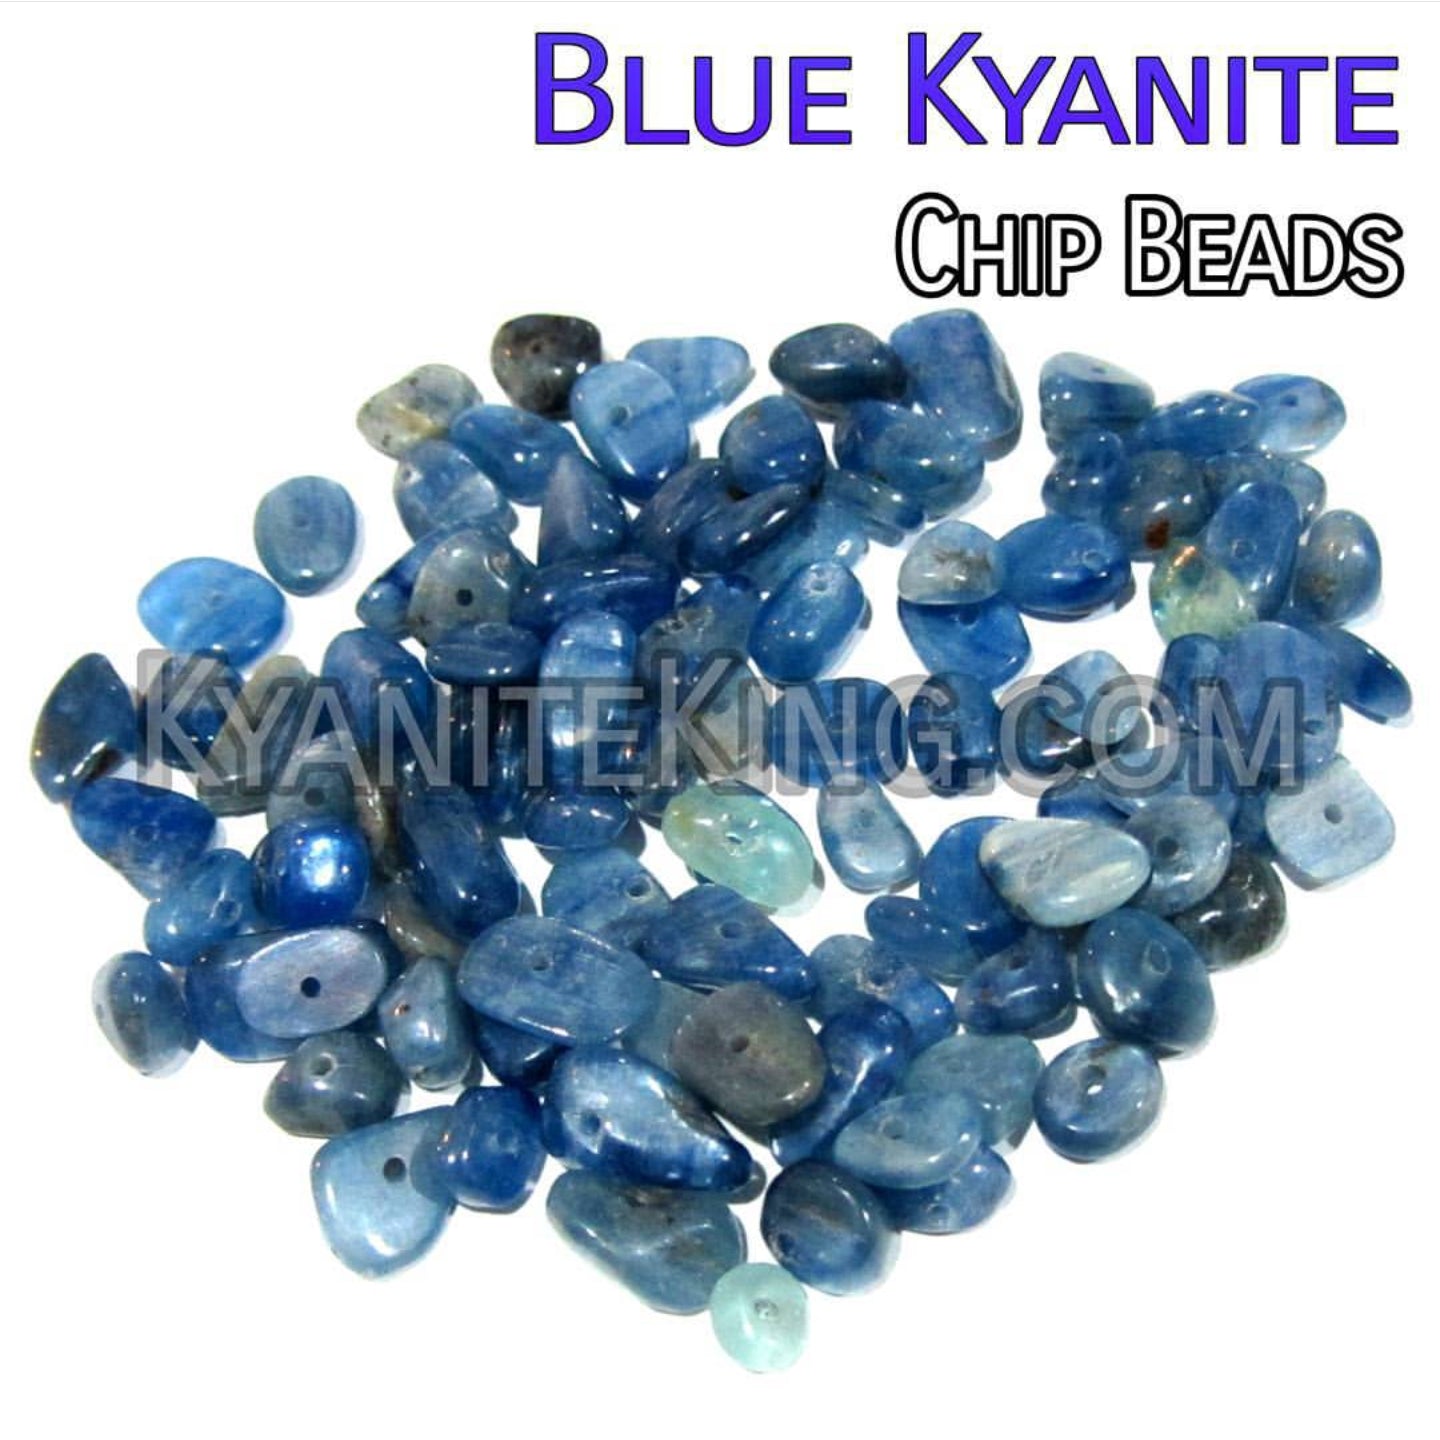 Blue Kyanite Chip beads Kyanite King Beads